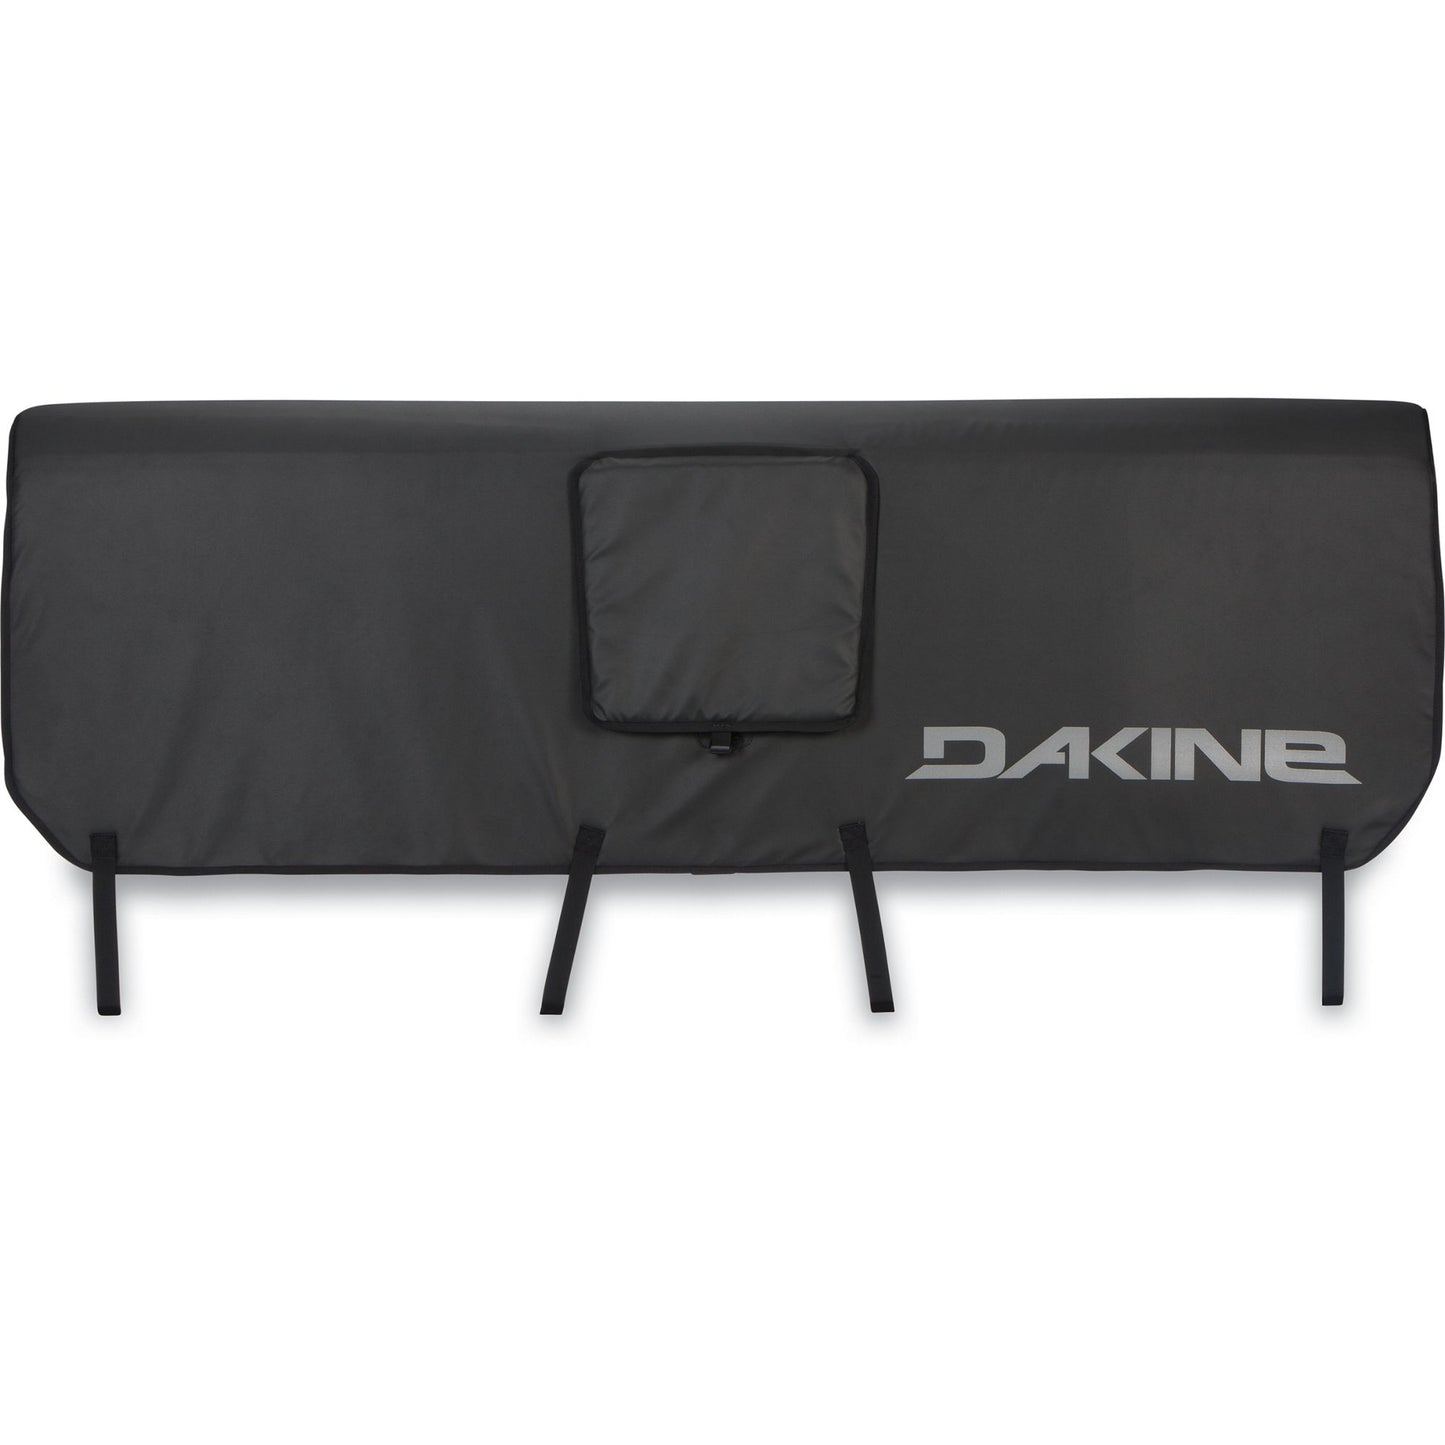 Dakine Pickup Pad DLX Black L Tailgate Pads